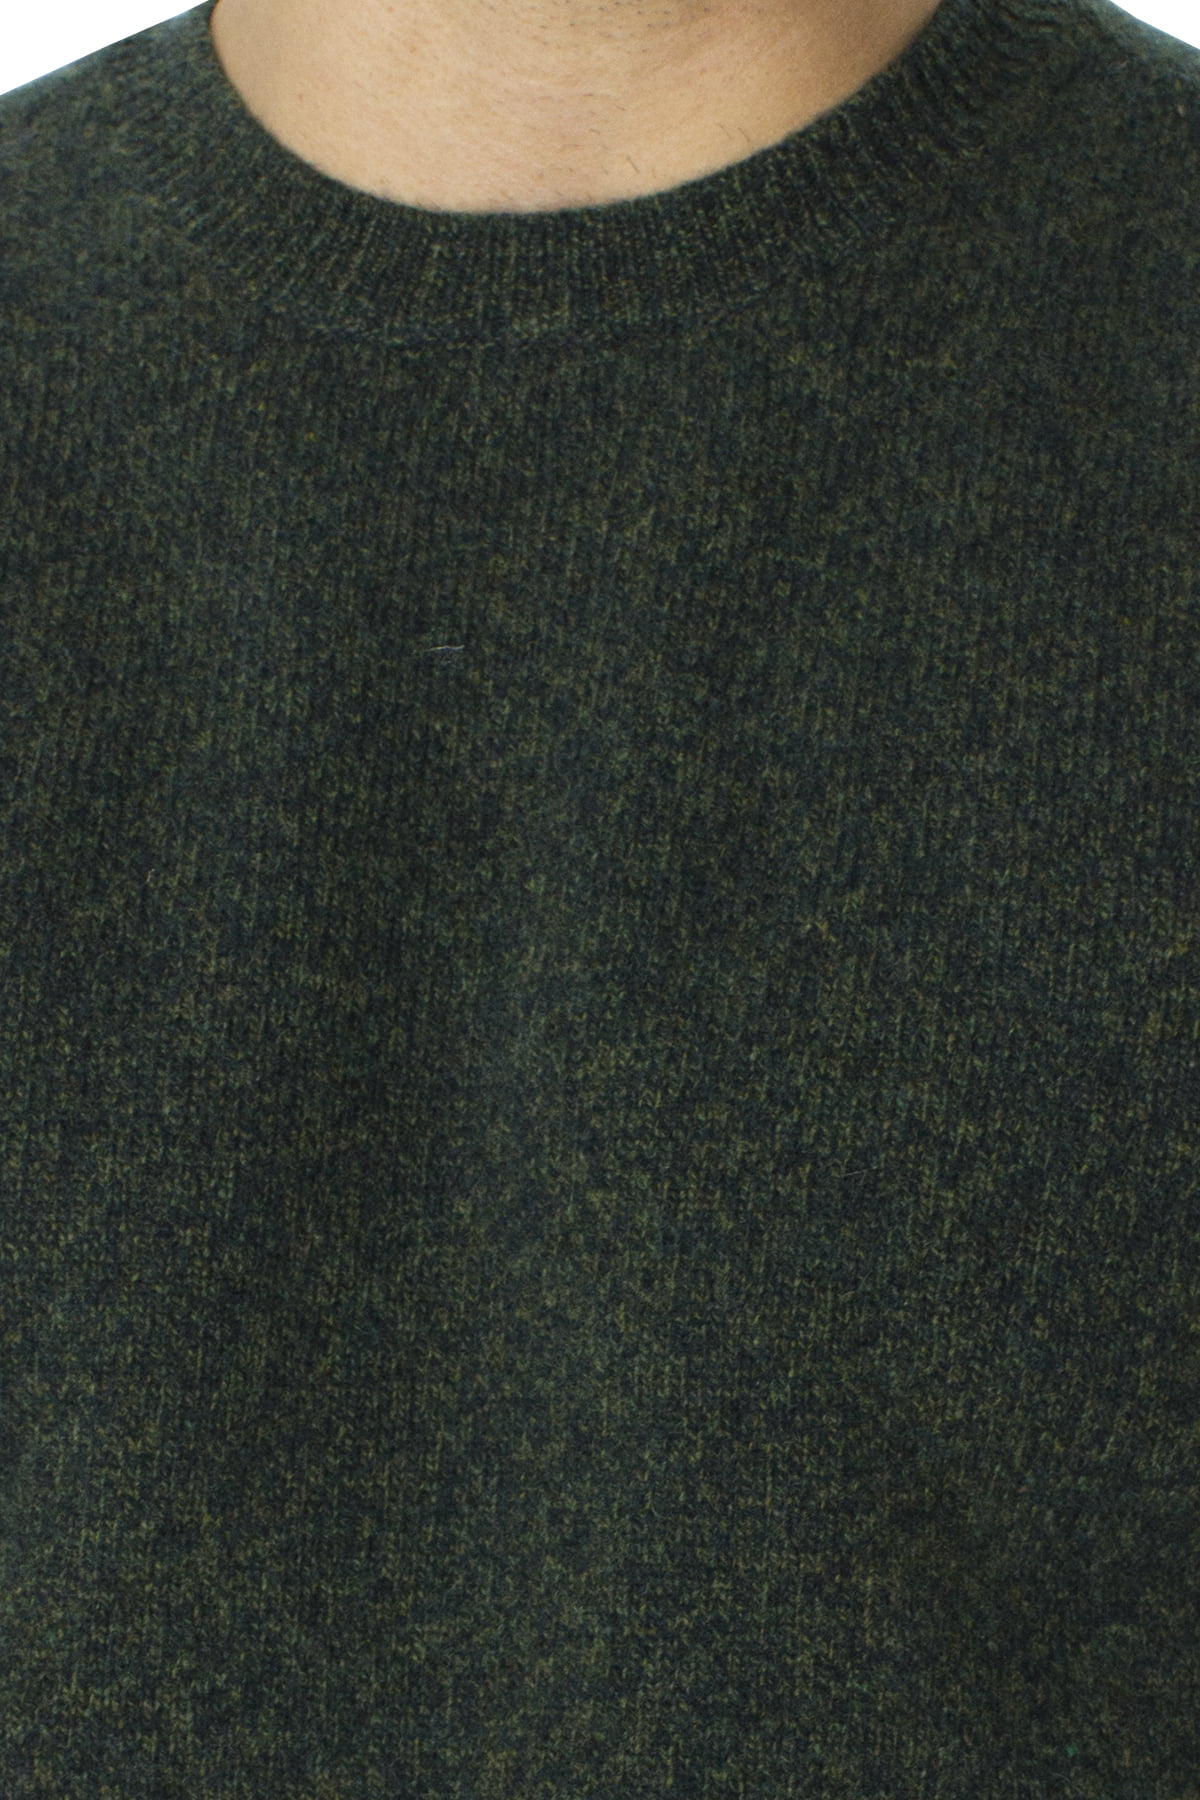 Maglione uomo Girocollo verde effetto melange senape in lana 100% slim fit